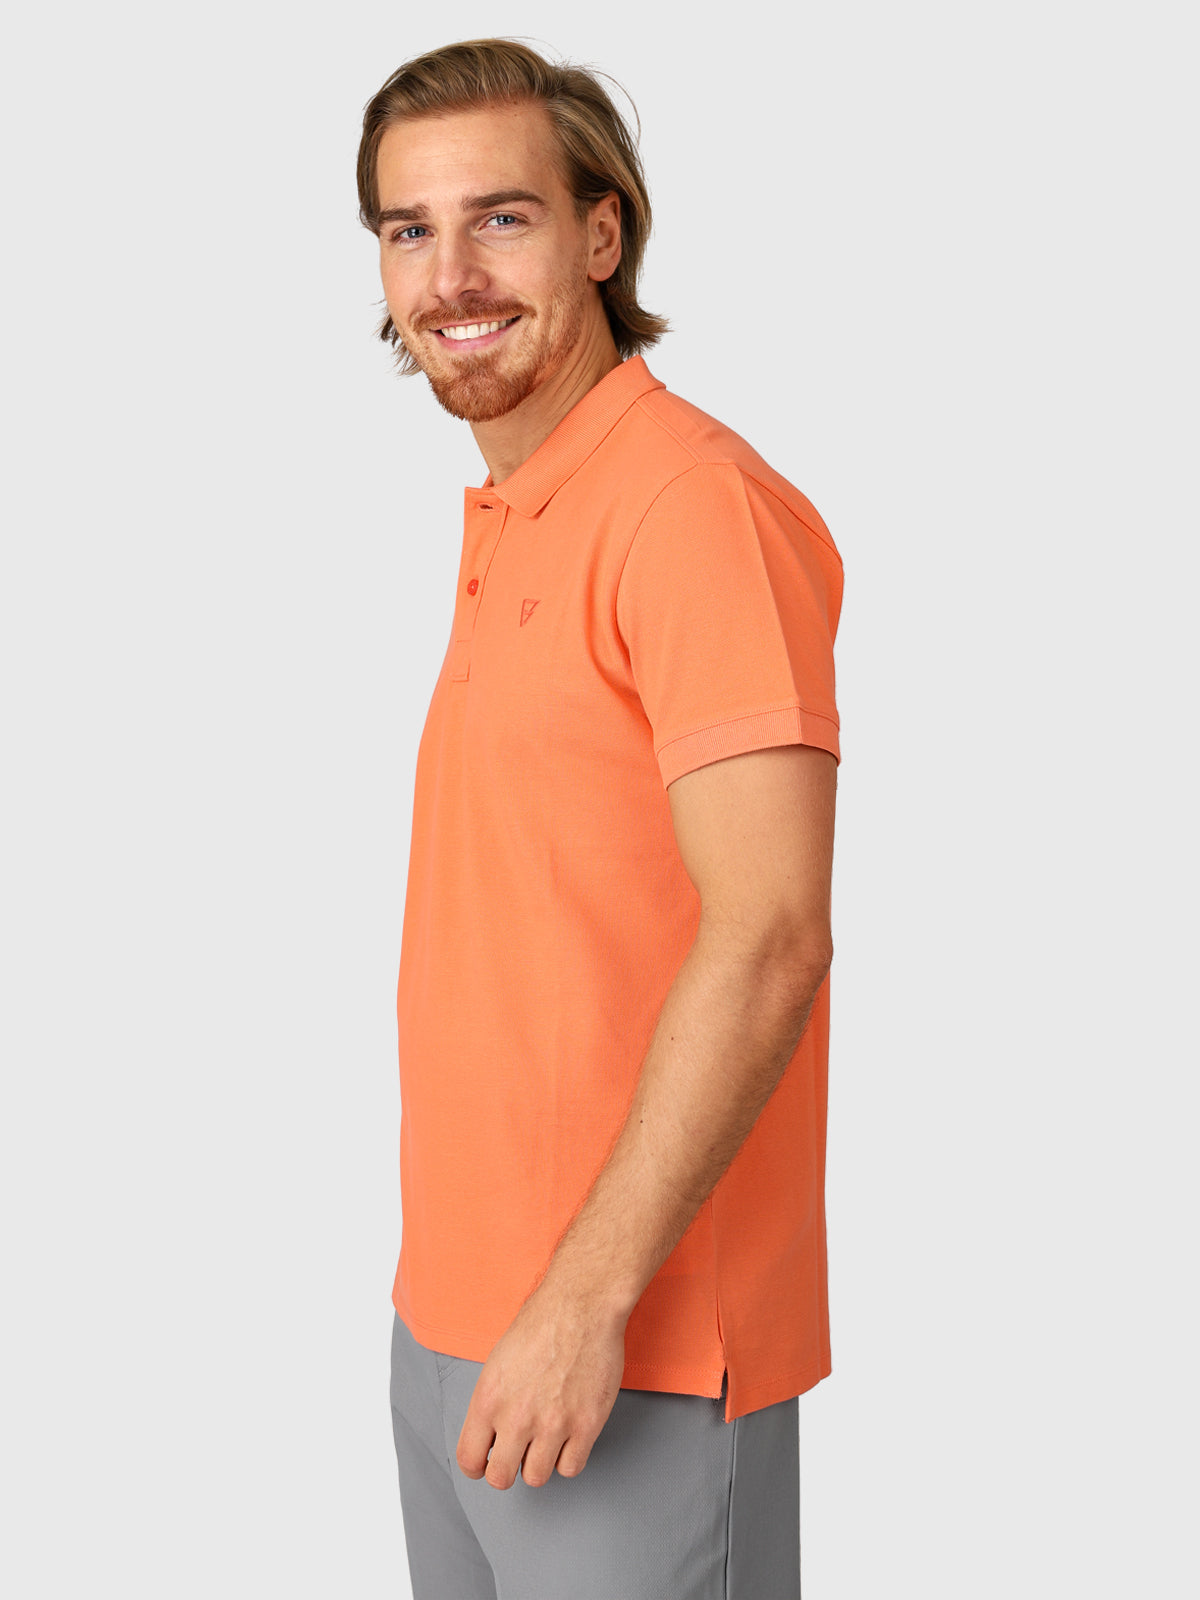 Frunot-II Herren Poloshirt | Orange